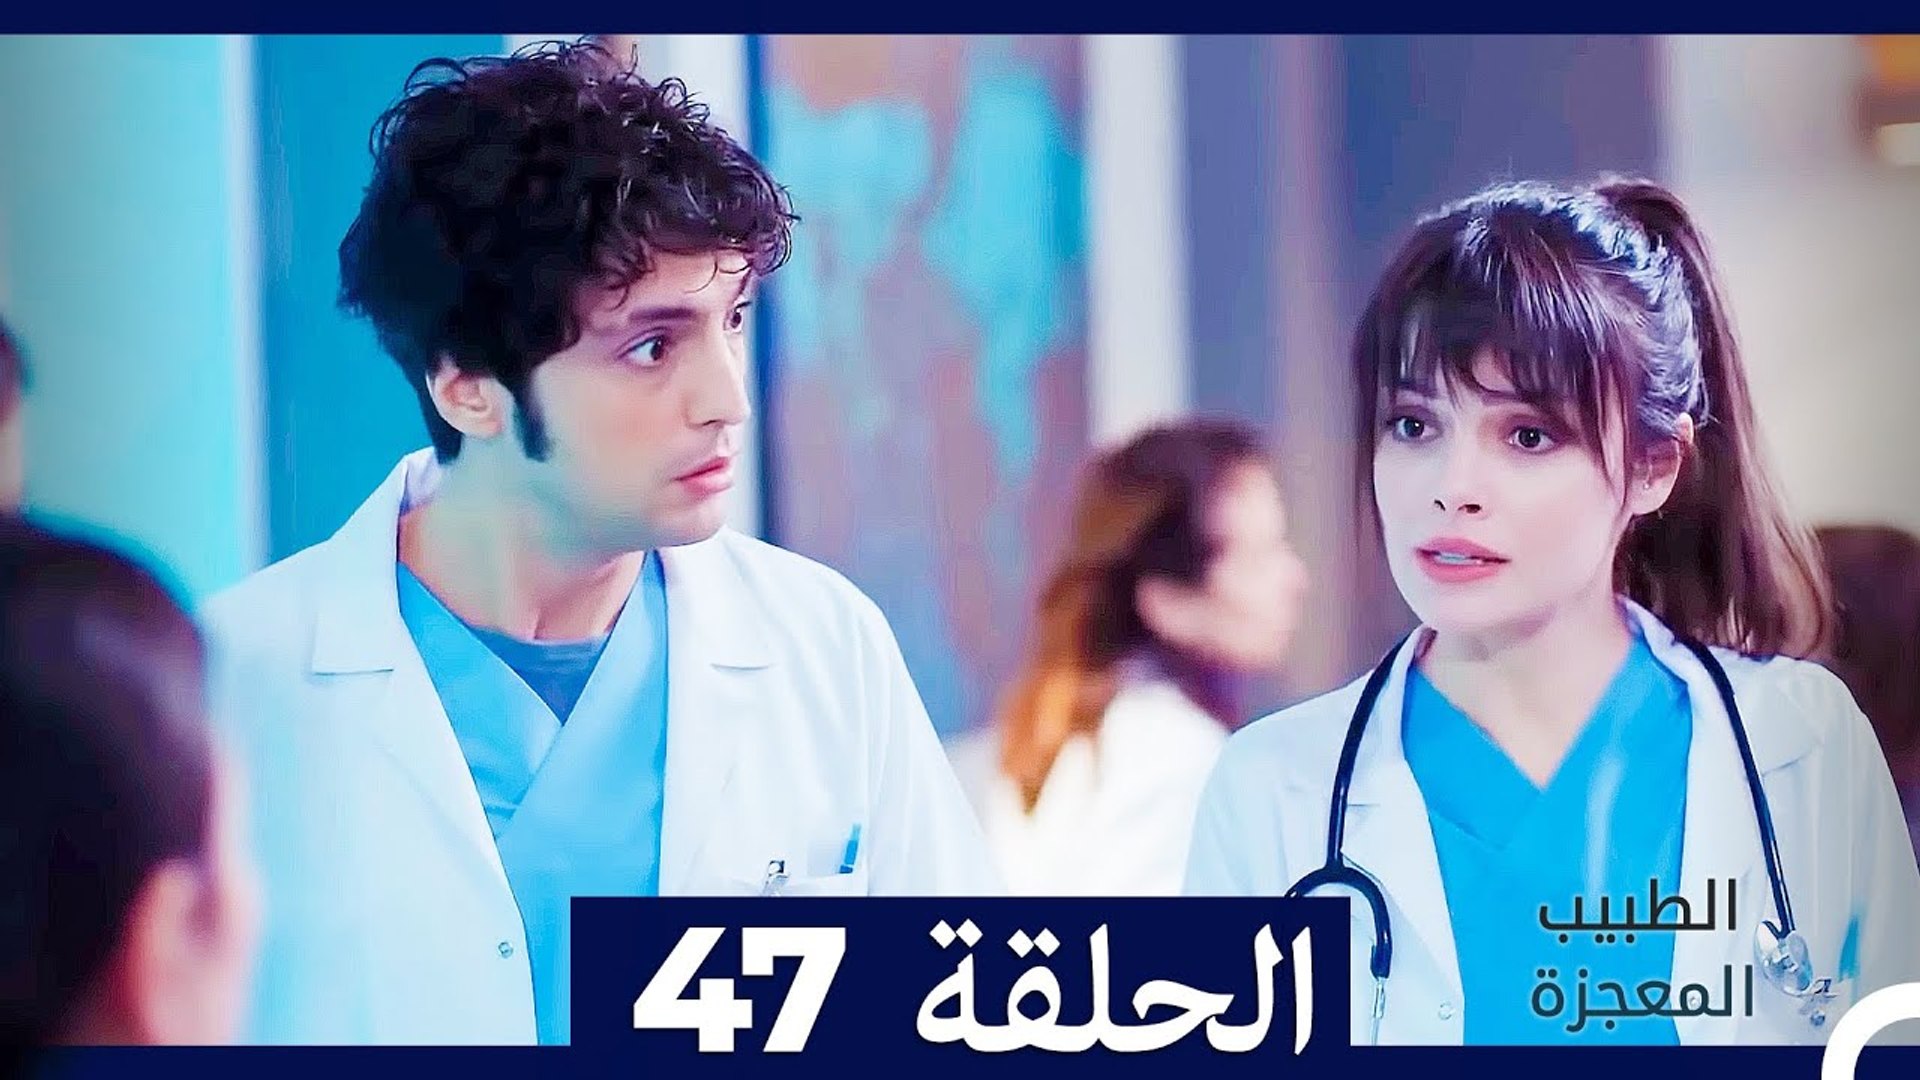 الطبيب المعجزة الحلقة 47 (Arabic Dubbed) - فيديو Dailymotion